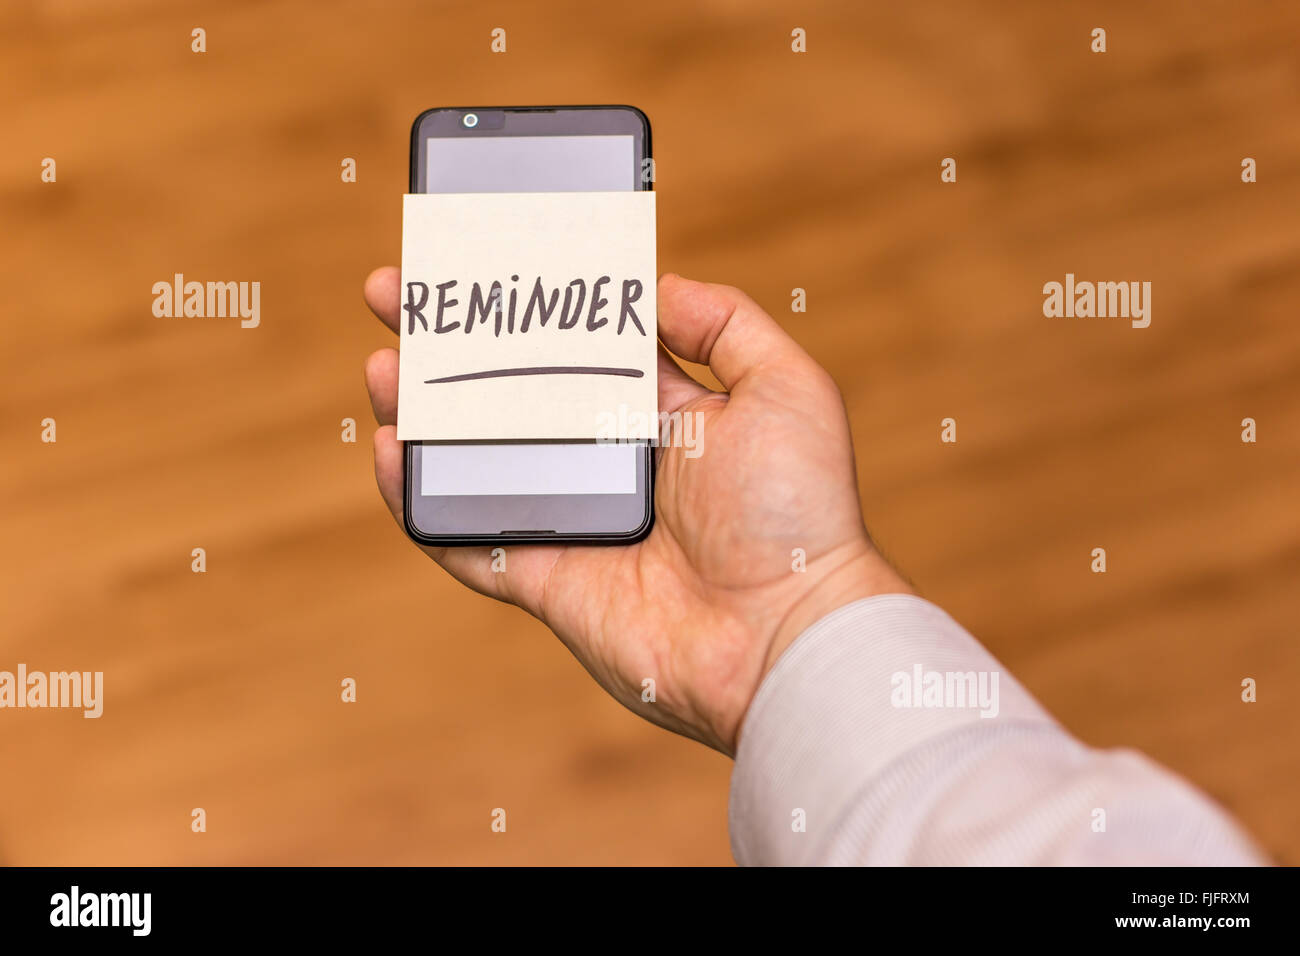 Menschliche Hand mit einem Smartphone mit gelben Hinweis darauf geklebt. Der Word Reminder ist auf dem Zettel geschrieben. Stockfoto